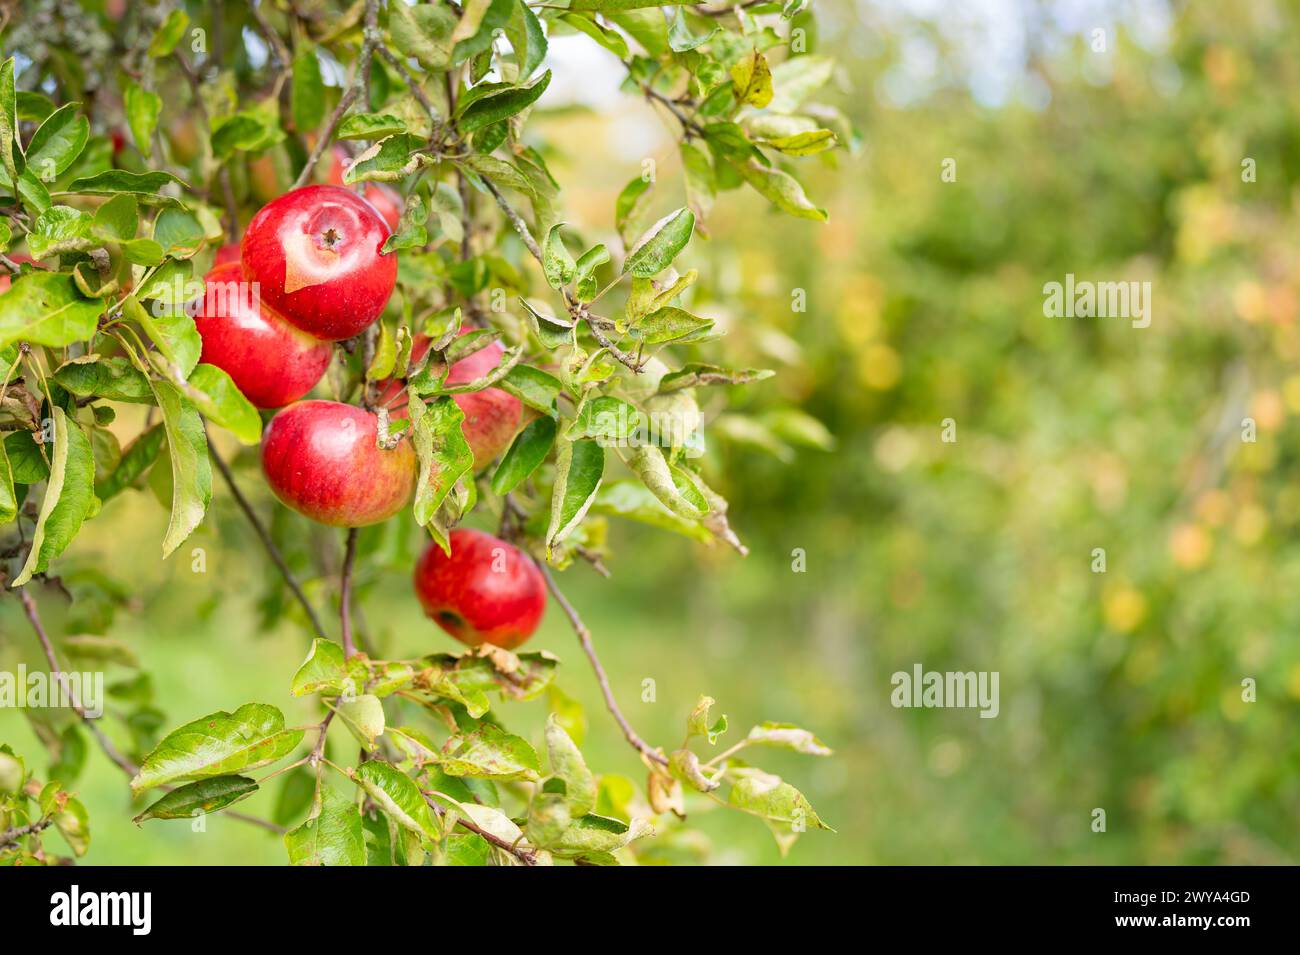 Nahaufnahme eines unfokussierten Hintergrunds von roten Apfelbäumen auf einer Farm. Backround mit frischen roten Bio-Äpfeln, die auf Zweigen mit grünen Blättern in Früchten wachsen Stockfoto